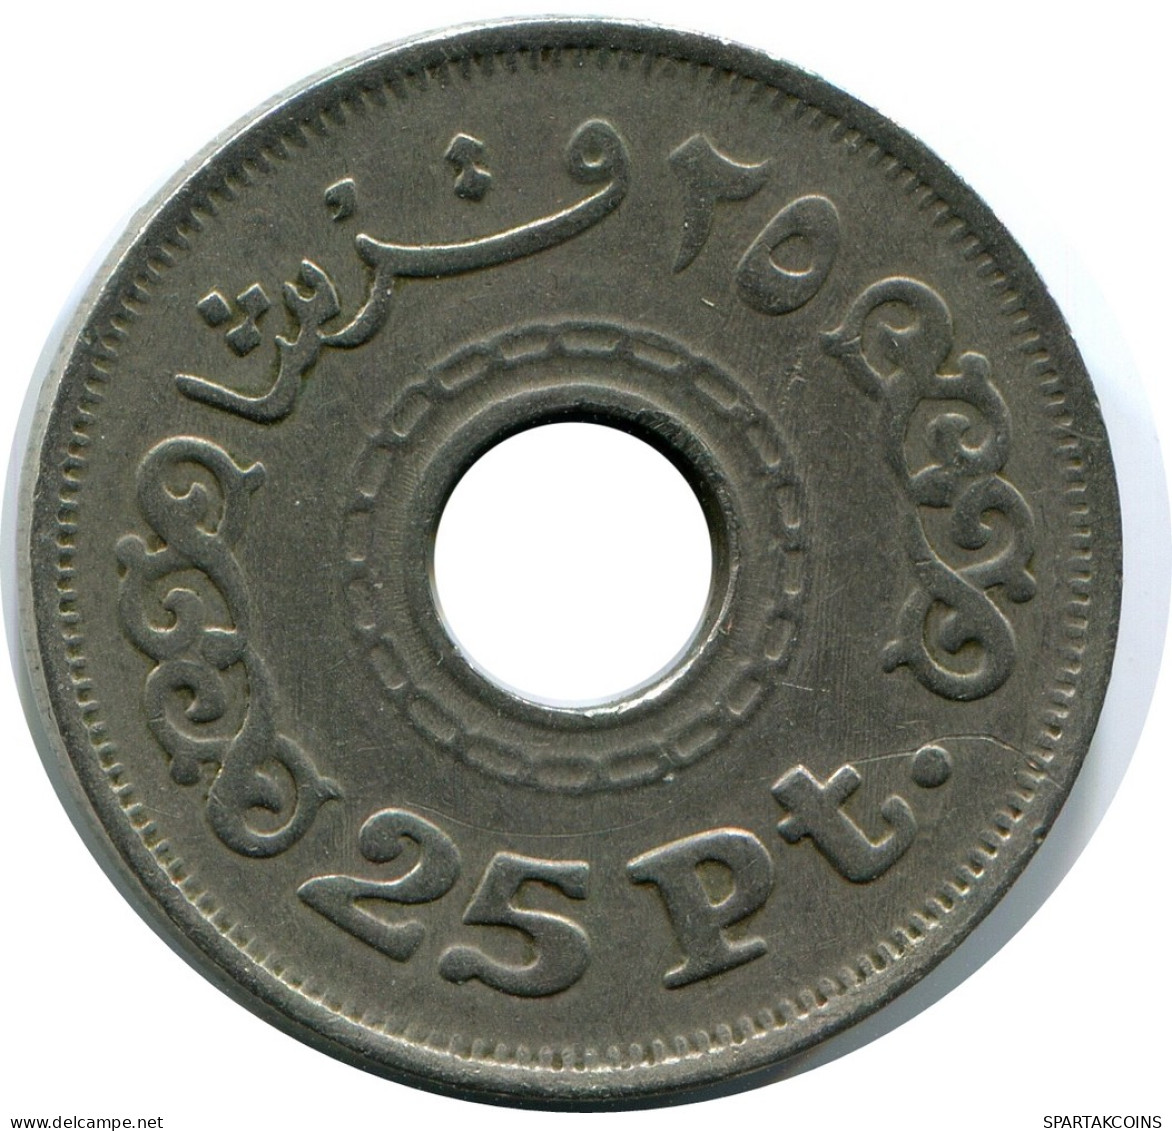 25 QIRSH / PIASTRES 1993 EGYPT Islamic Coin #AP163.U - Egypt